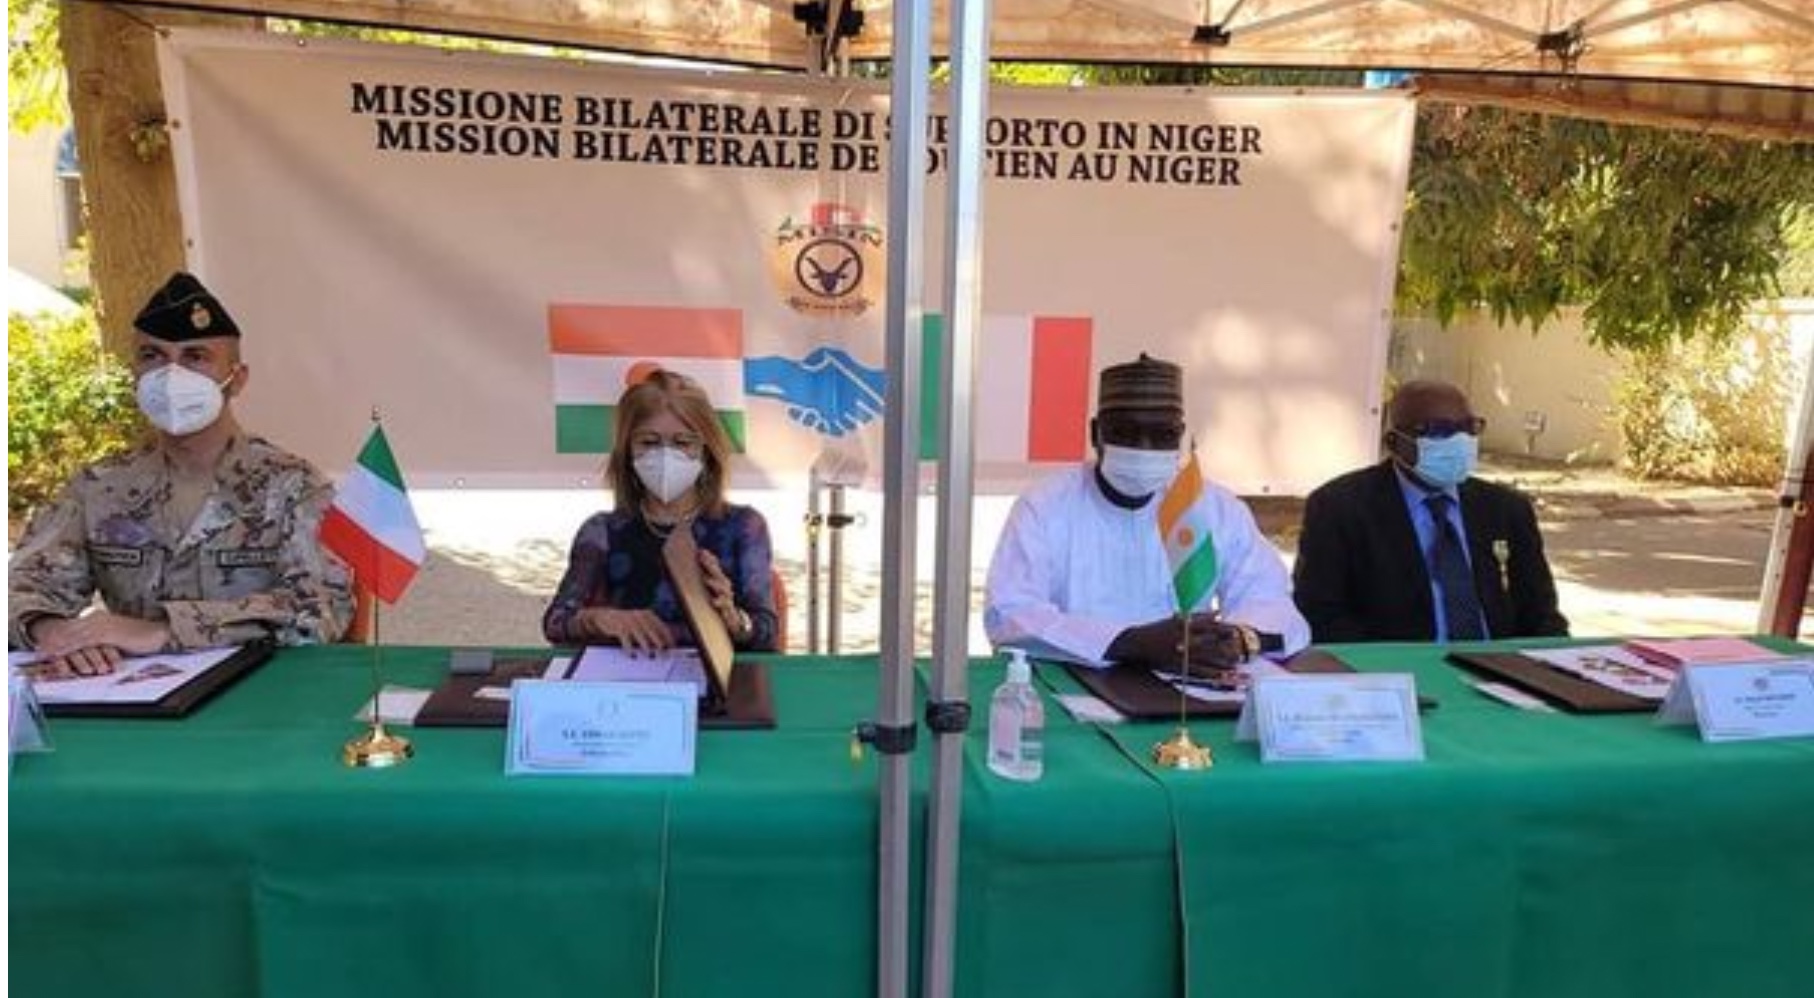 نیجر، ماموریت دفاع از Misin، مقامات نیجریه از دولت ایتالیا تشکر می کنند: 1000 کیت بهداشتی اهدا شد